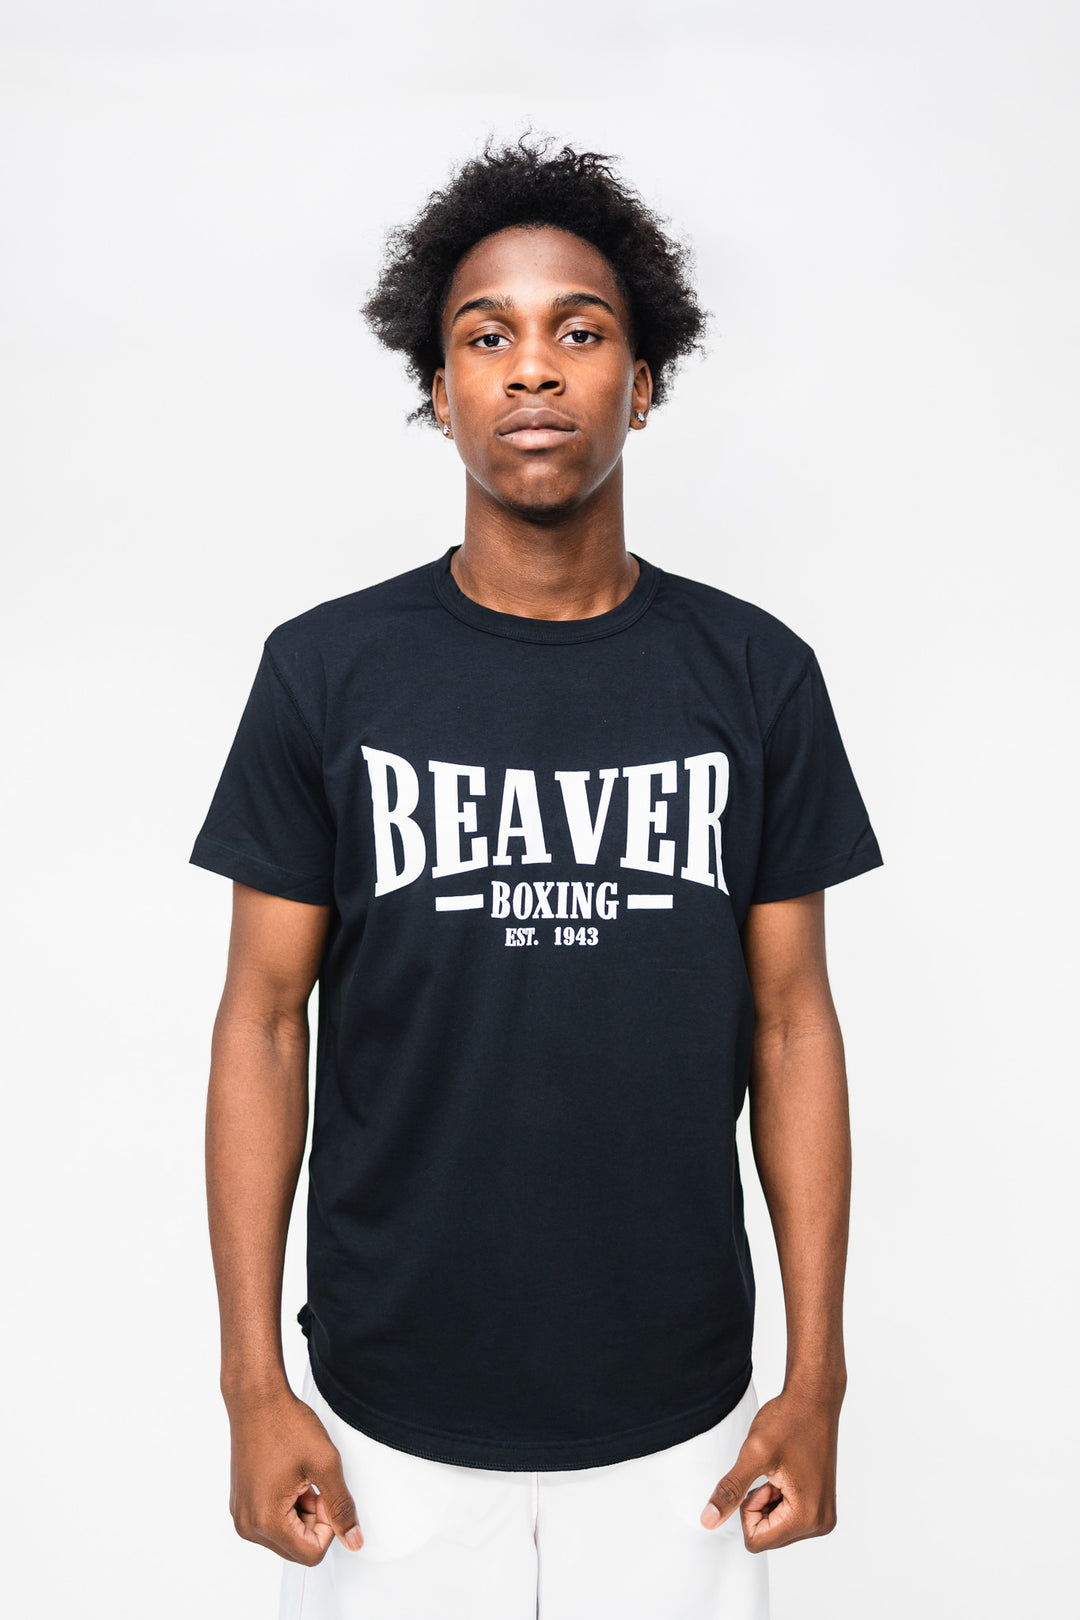 Beaver Boxing T-Shirt EST. 1943  - Black